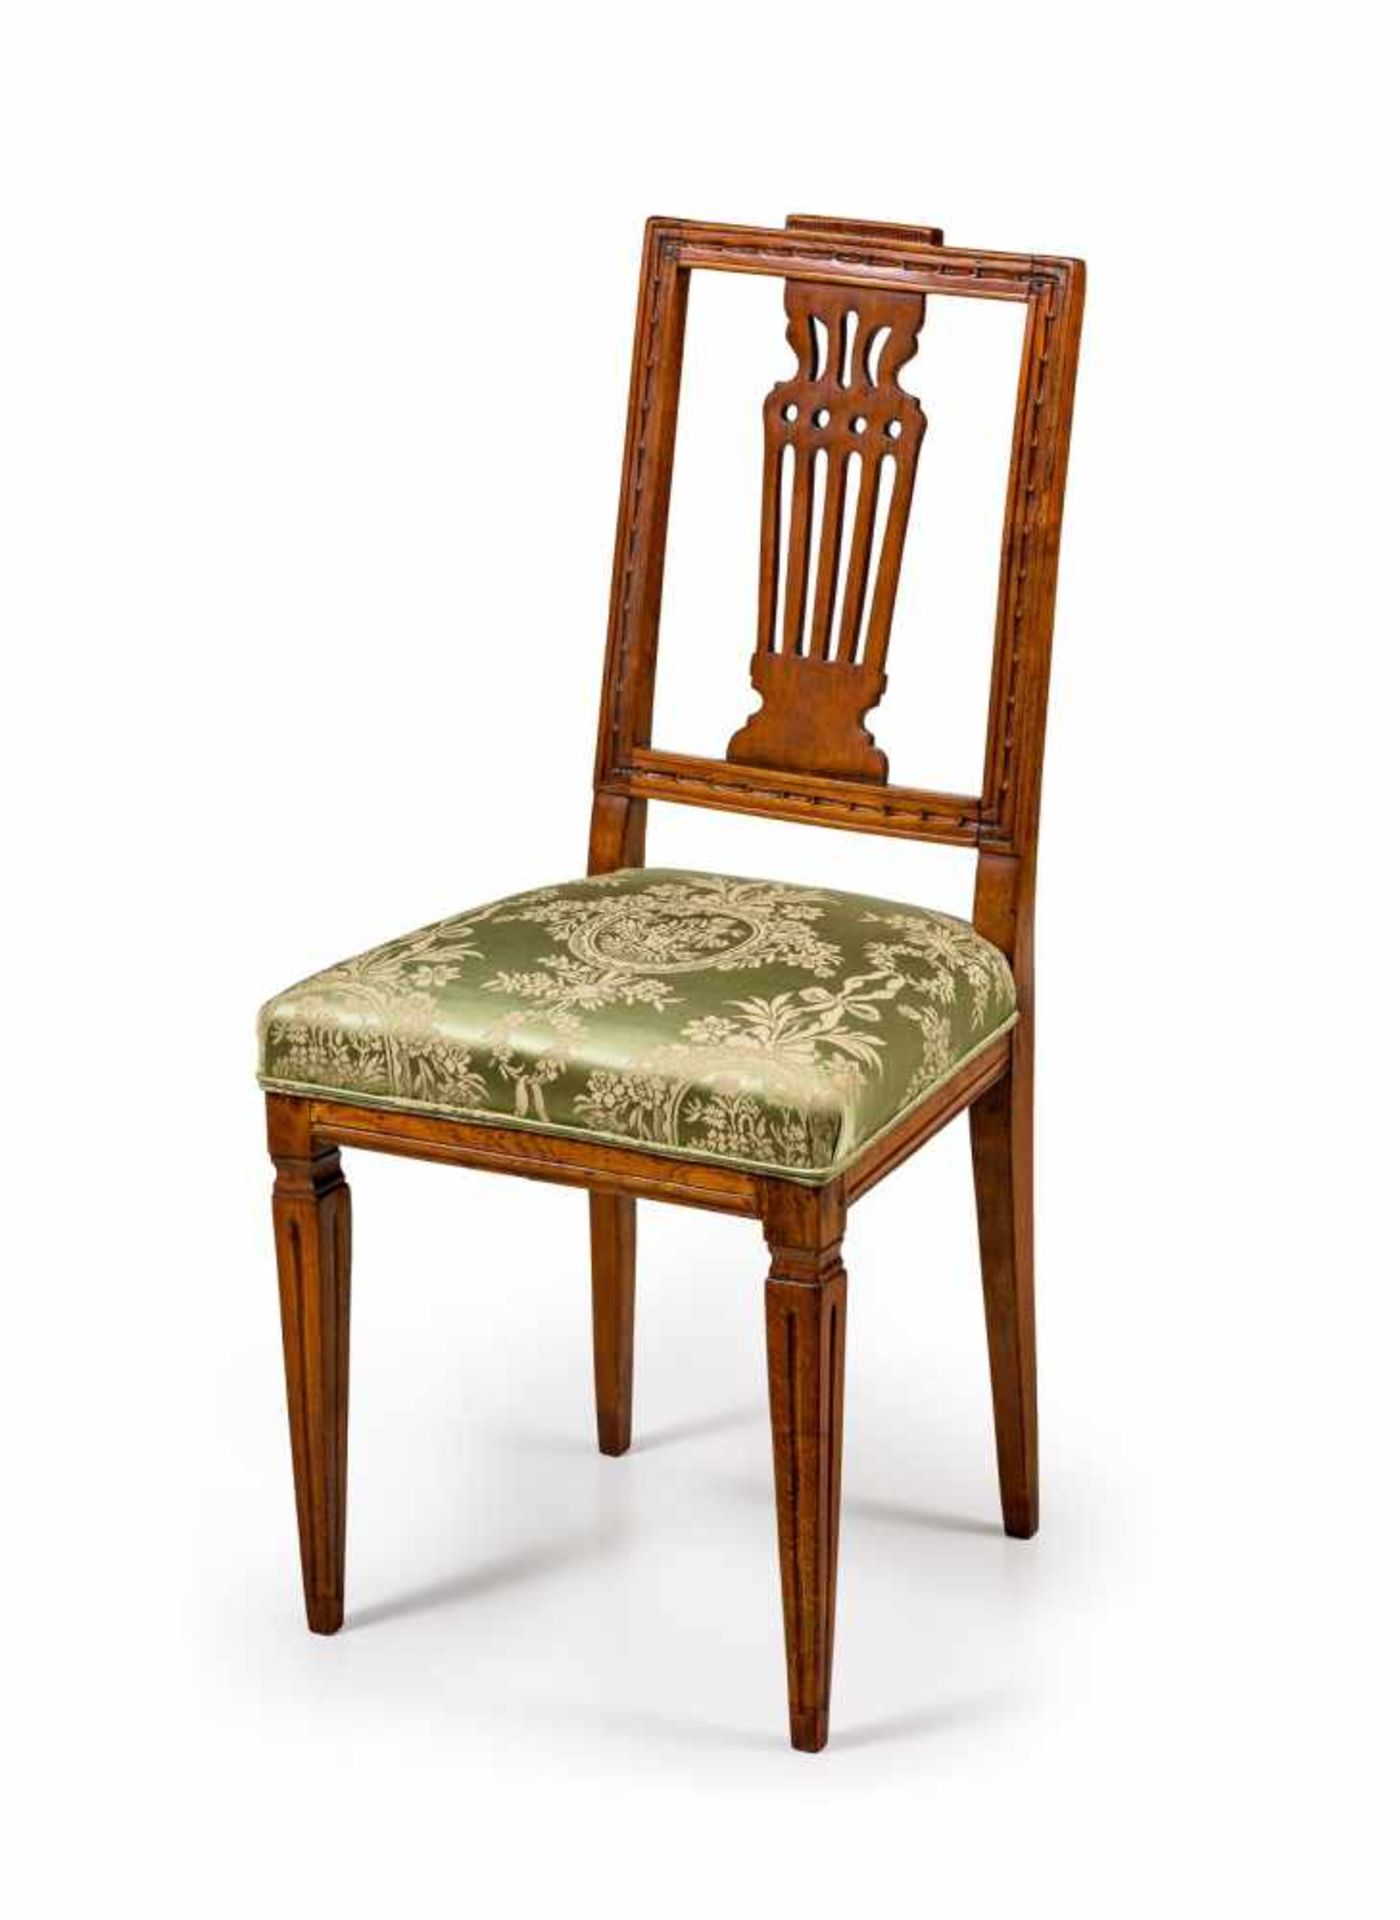 Klassizistischer Stuhl in der Art von Friedrich Gottlob HoffmannSachsen, um 1790Buche. Rechteckige